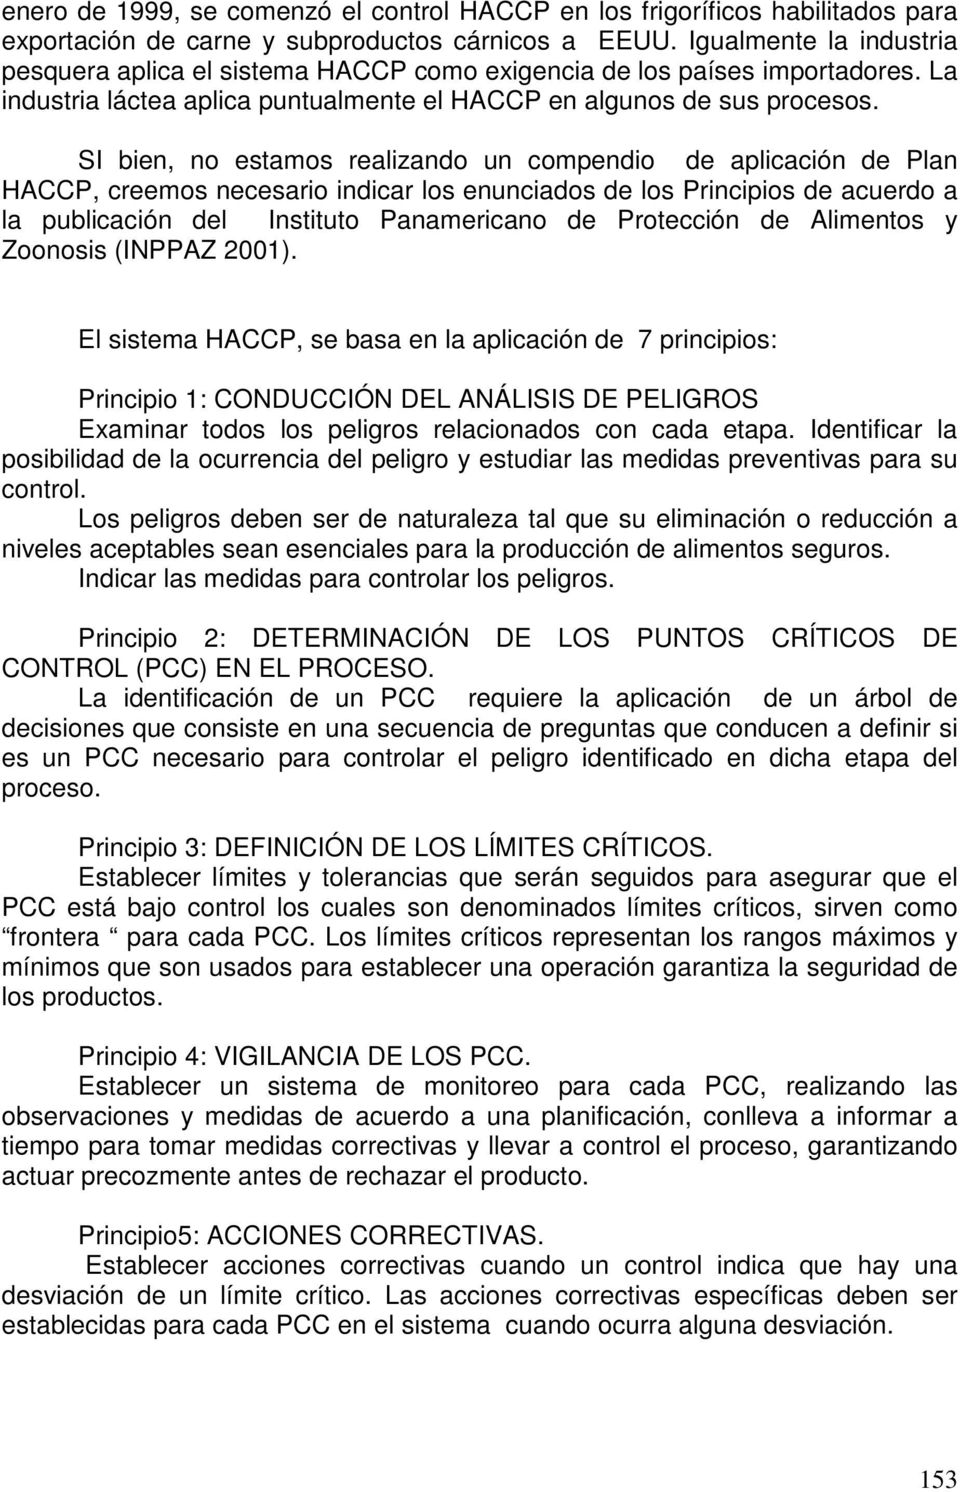 SI bien, no estamos realizando un compendio de aplicación de Plan HACCP, creemos necesario indicar los enunciados de los Principios de acuerdo a la publicación del Instituto Panamericano de